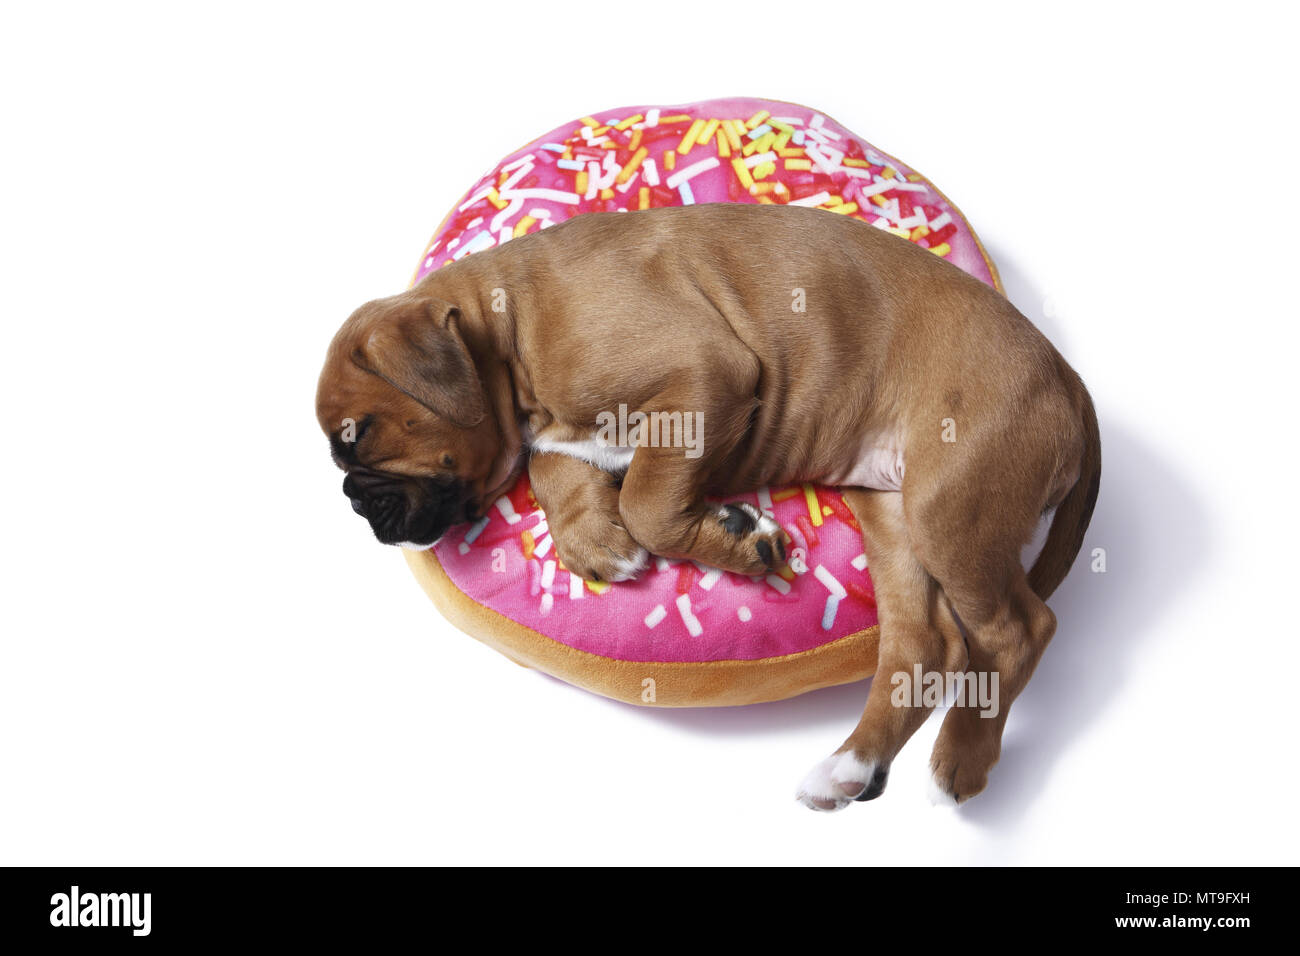 Boxeur allemand. Puppy (7 semaines) de dormir sur un coussin en forme de beignet. Studio photo Banque D'Images